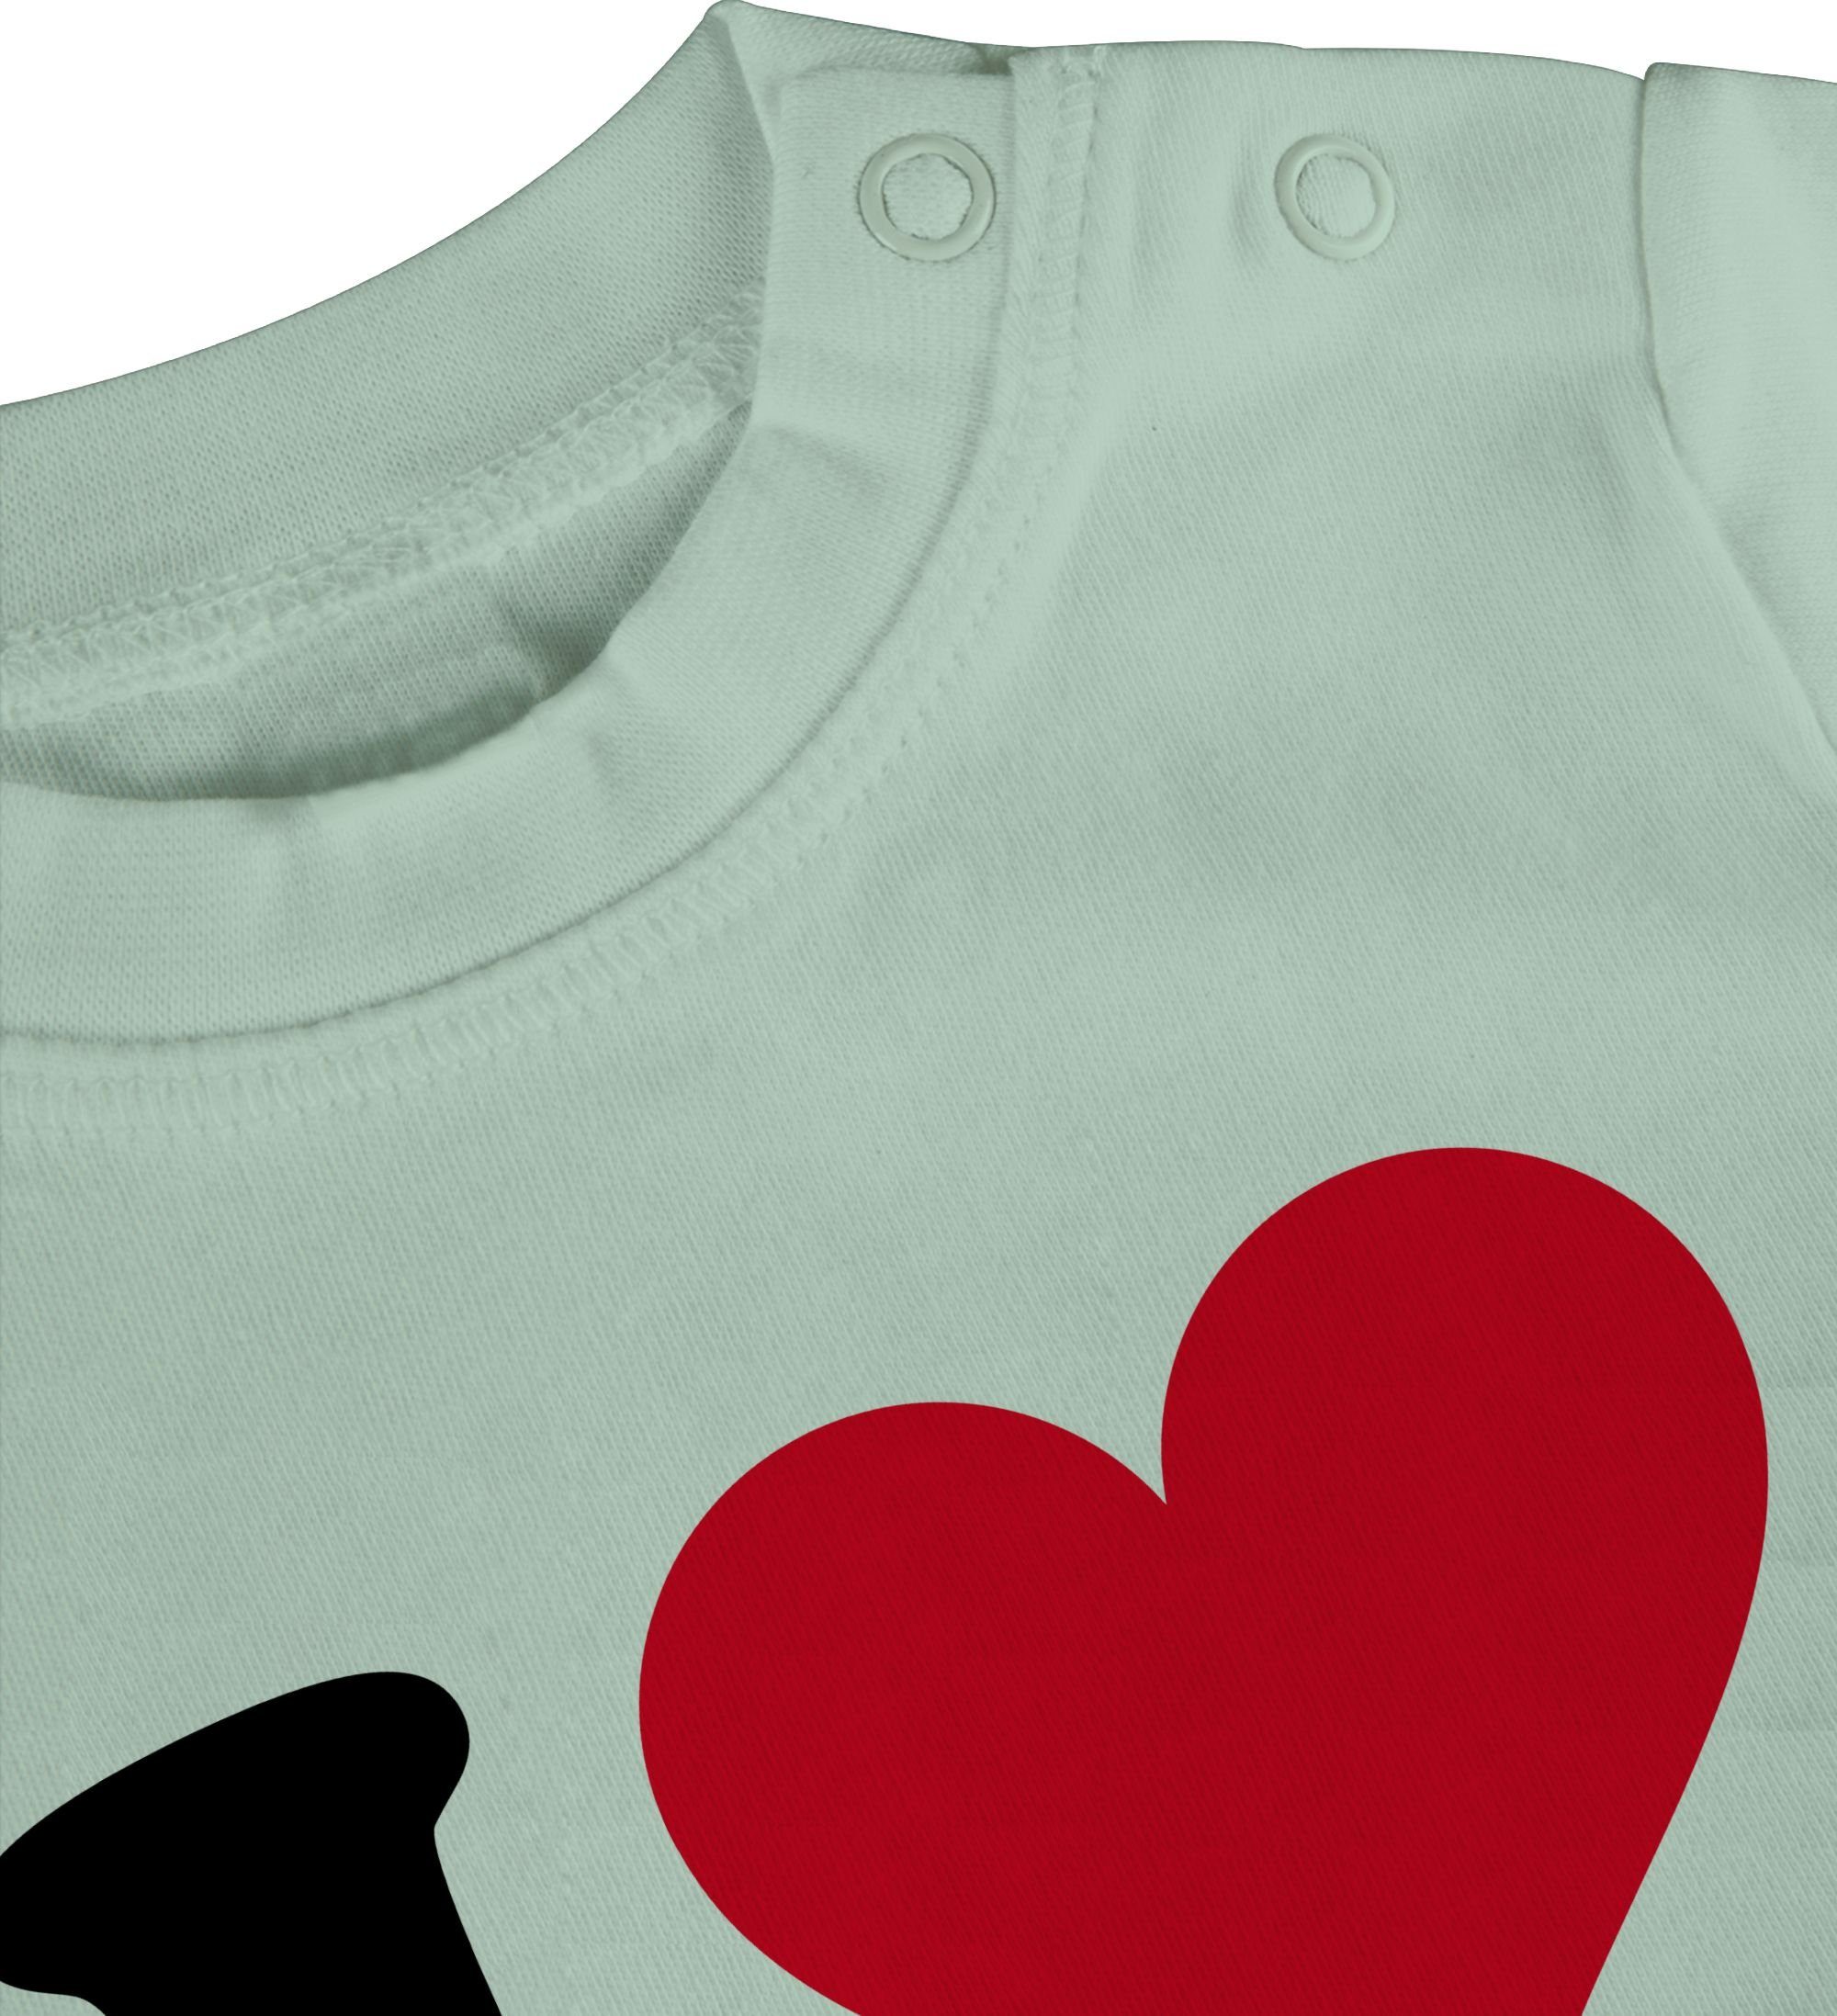 Shirtracer T-Shirt I Love Mama Mintgrün 2 Muttertagsgeschenk